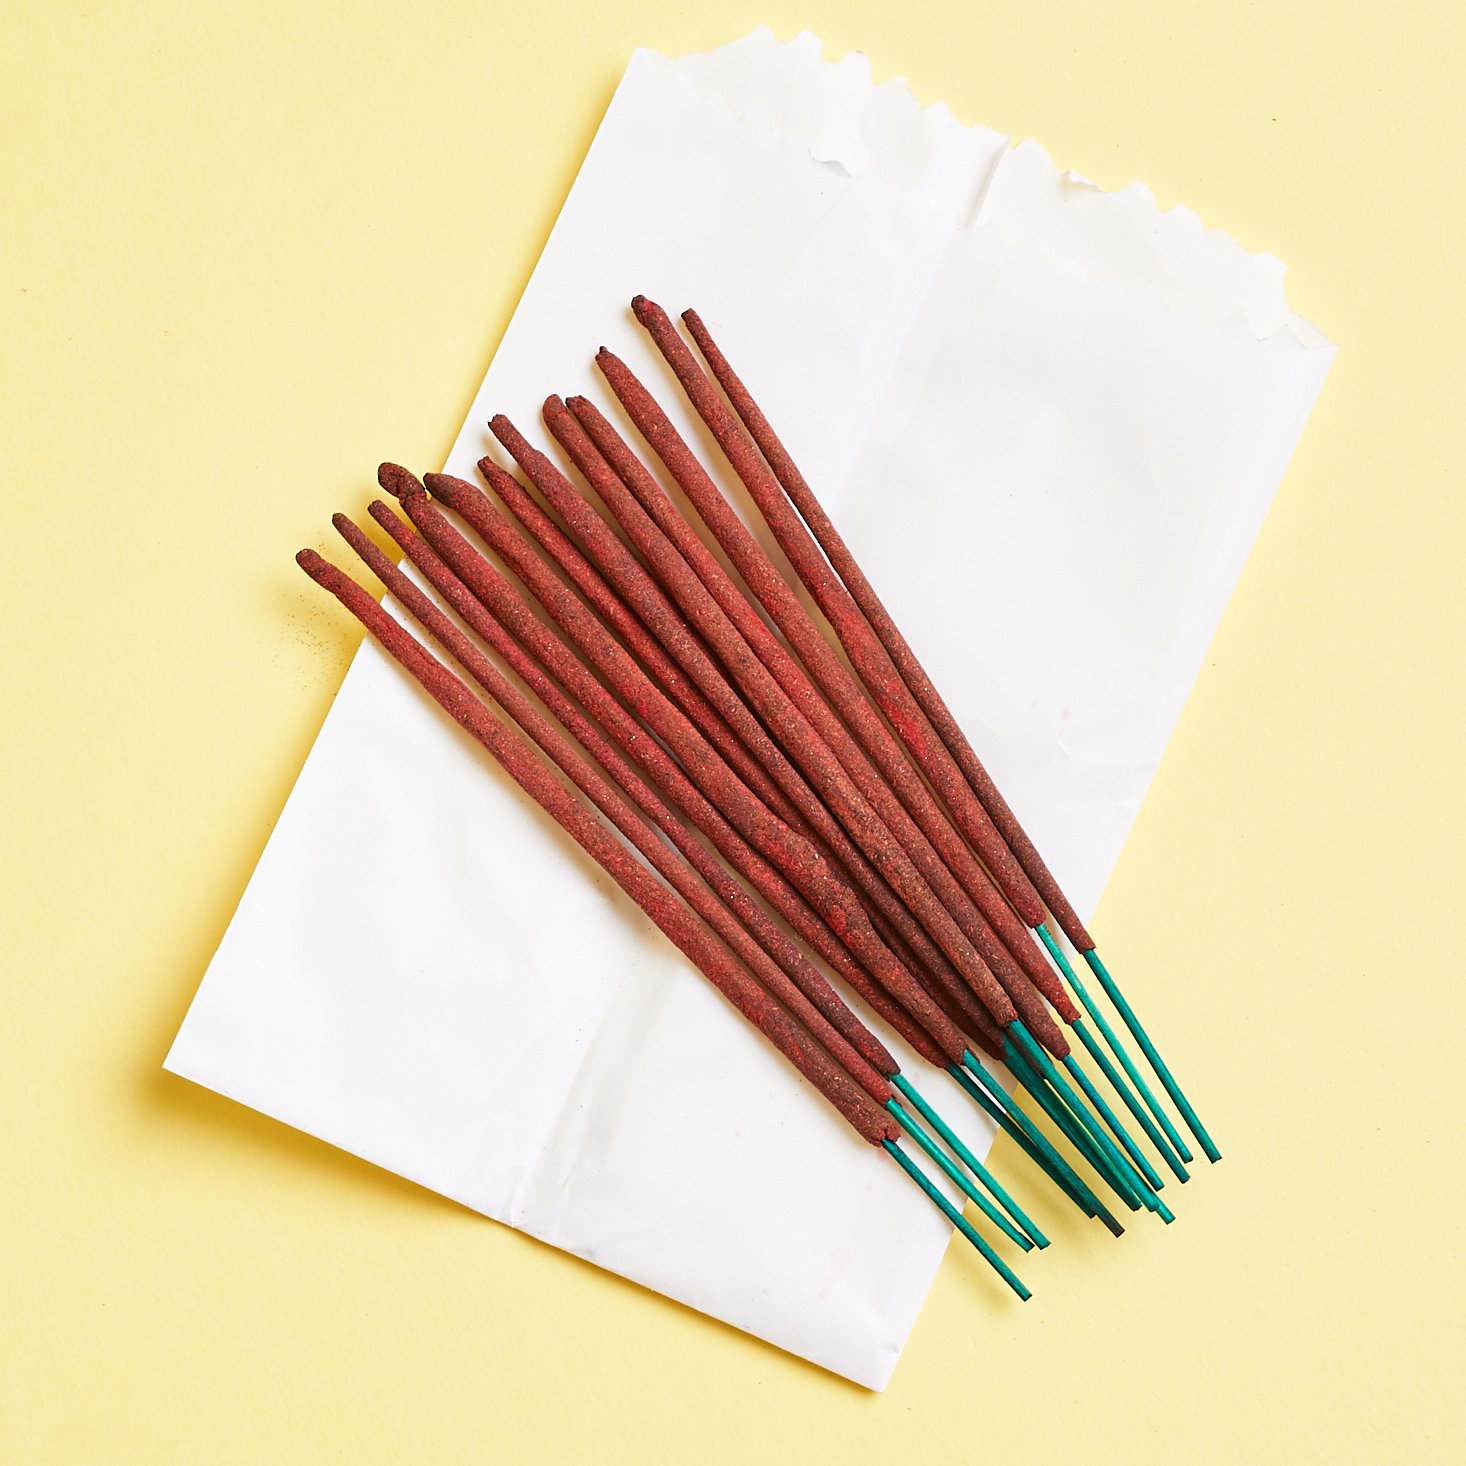 incense sticks in bundle